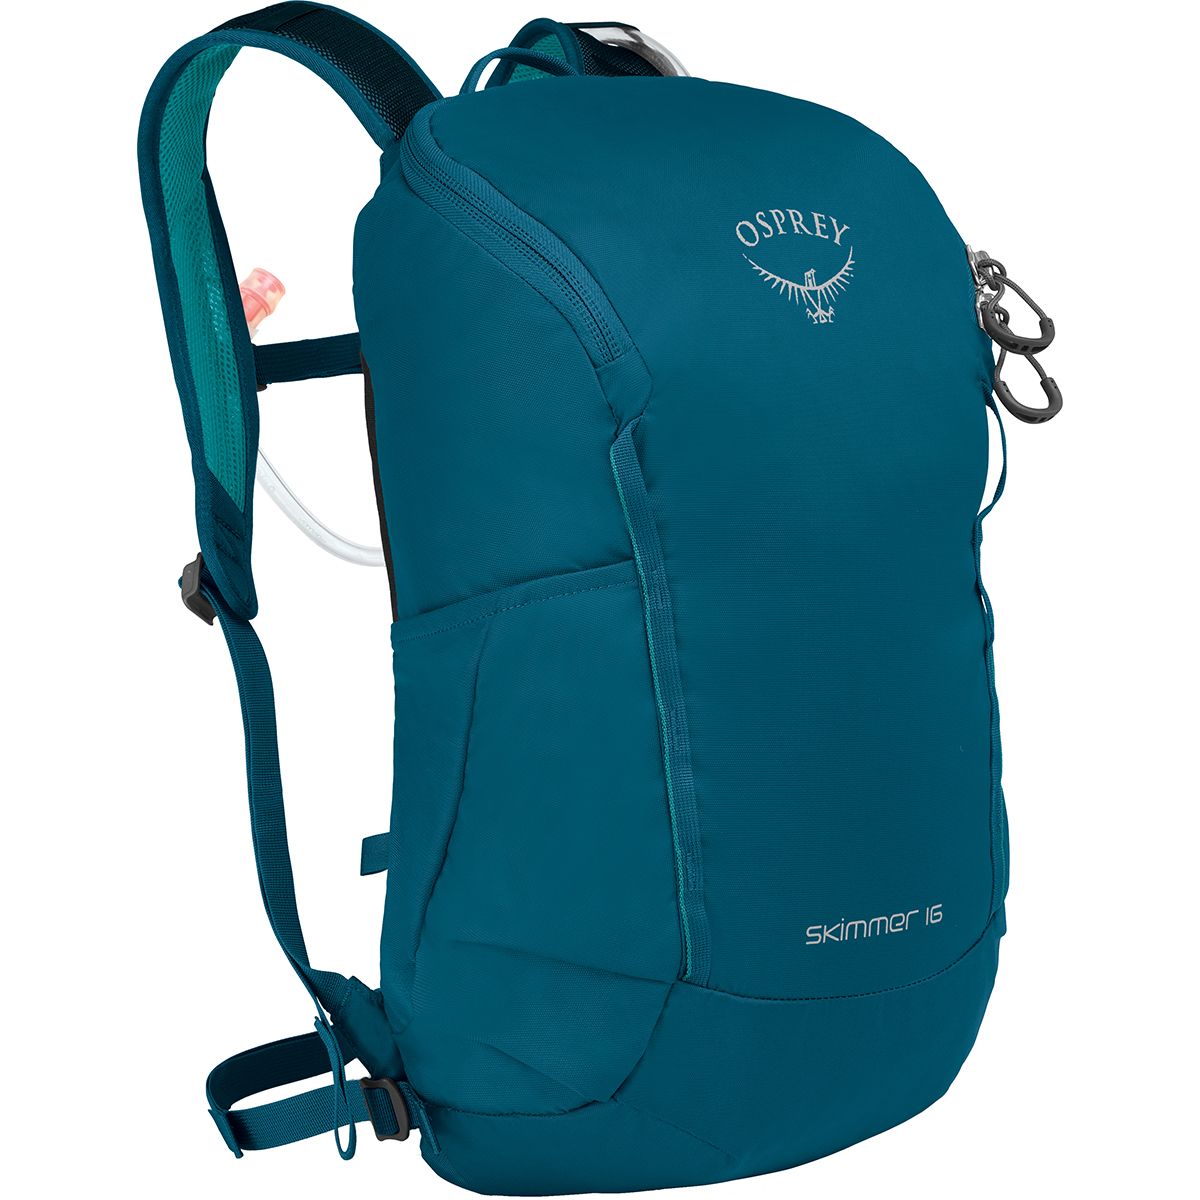 Osprey Packs Skimmer 16L Backpack - Women's